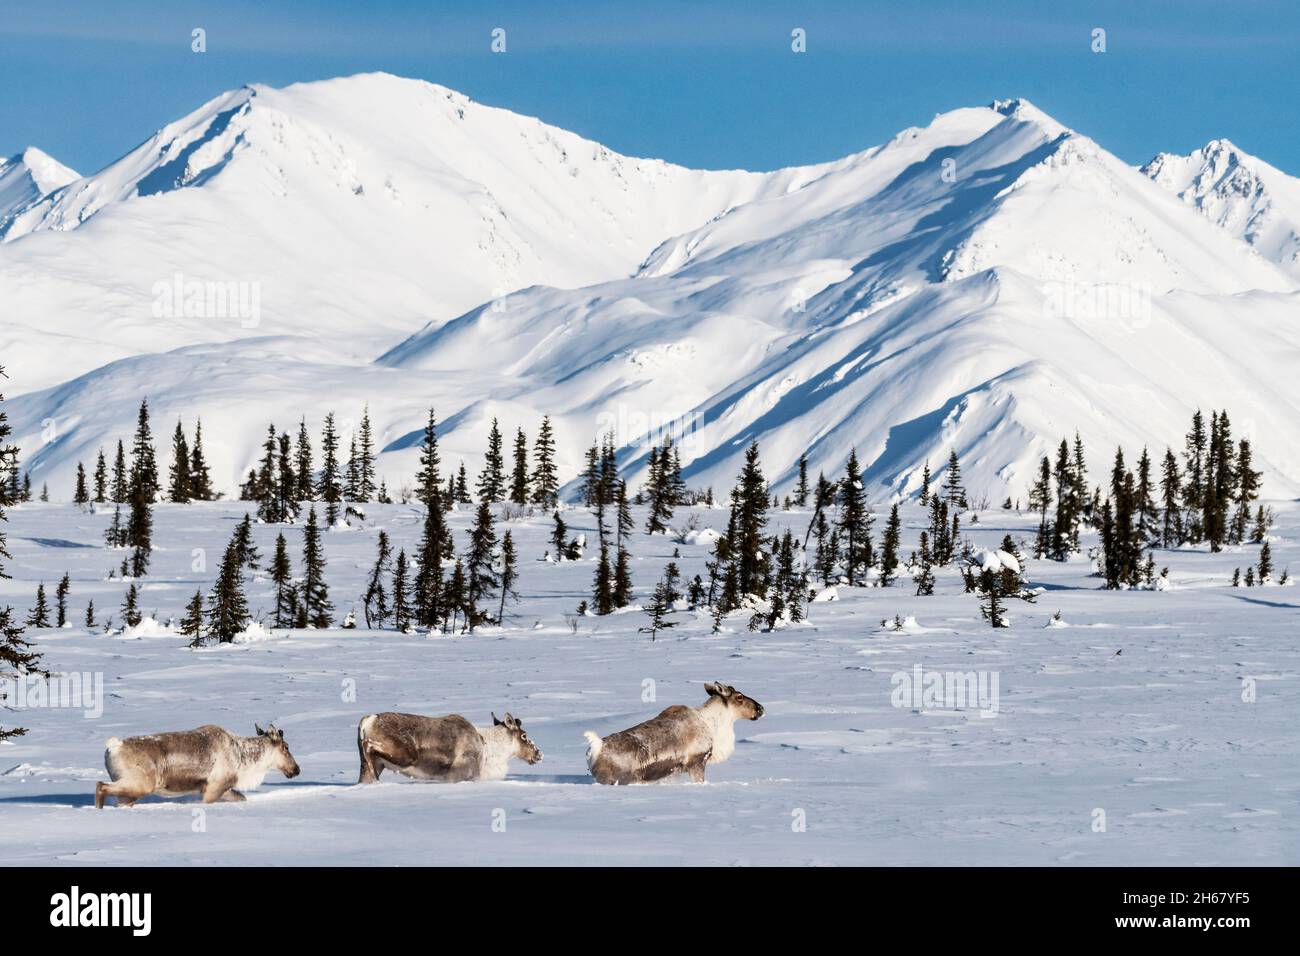 Amérique du Nord; États-Unis; Alaska; faune; mammifères;Caribou; Rangifer tarandus.Migration en hiver ; neige profonde Banque D'Images